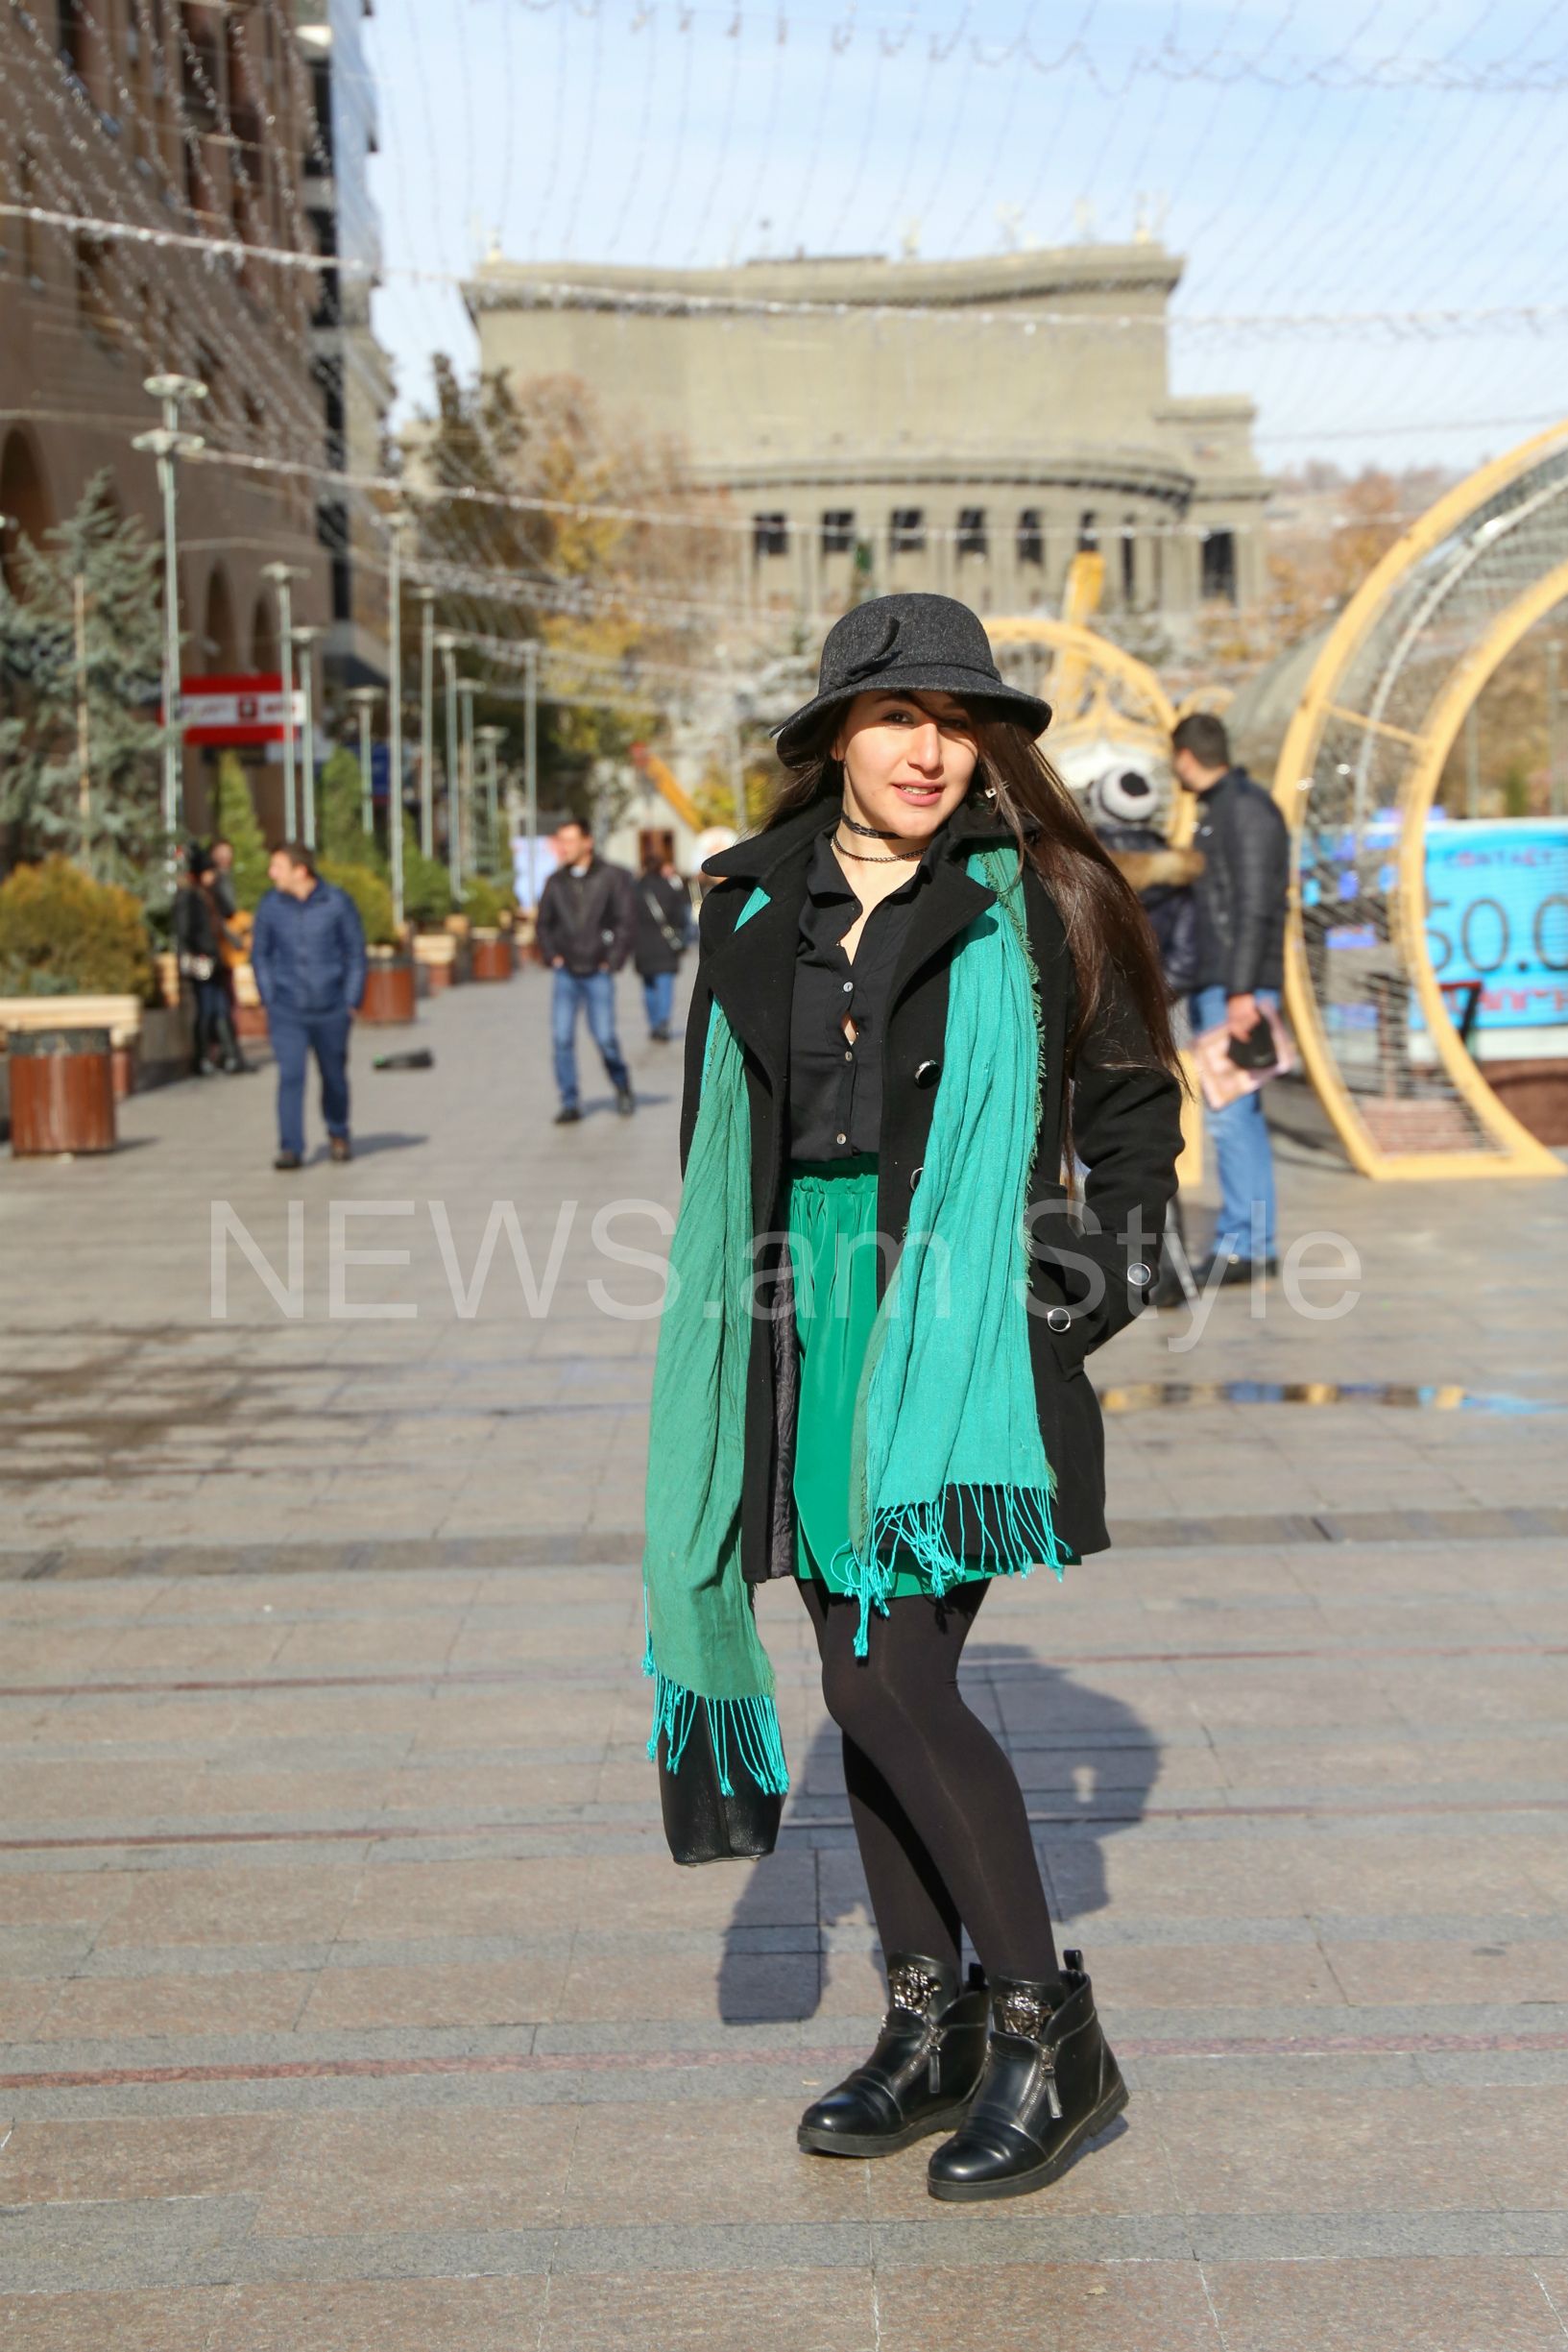 Одежда в ереване. Уличный стиль в Ереване. Весенний образ в Ереване. Как одеваются девушки в Ереване. Современная уличная женская мода в Ереване.